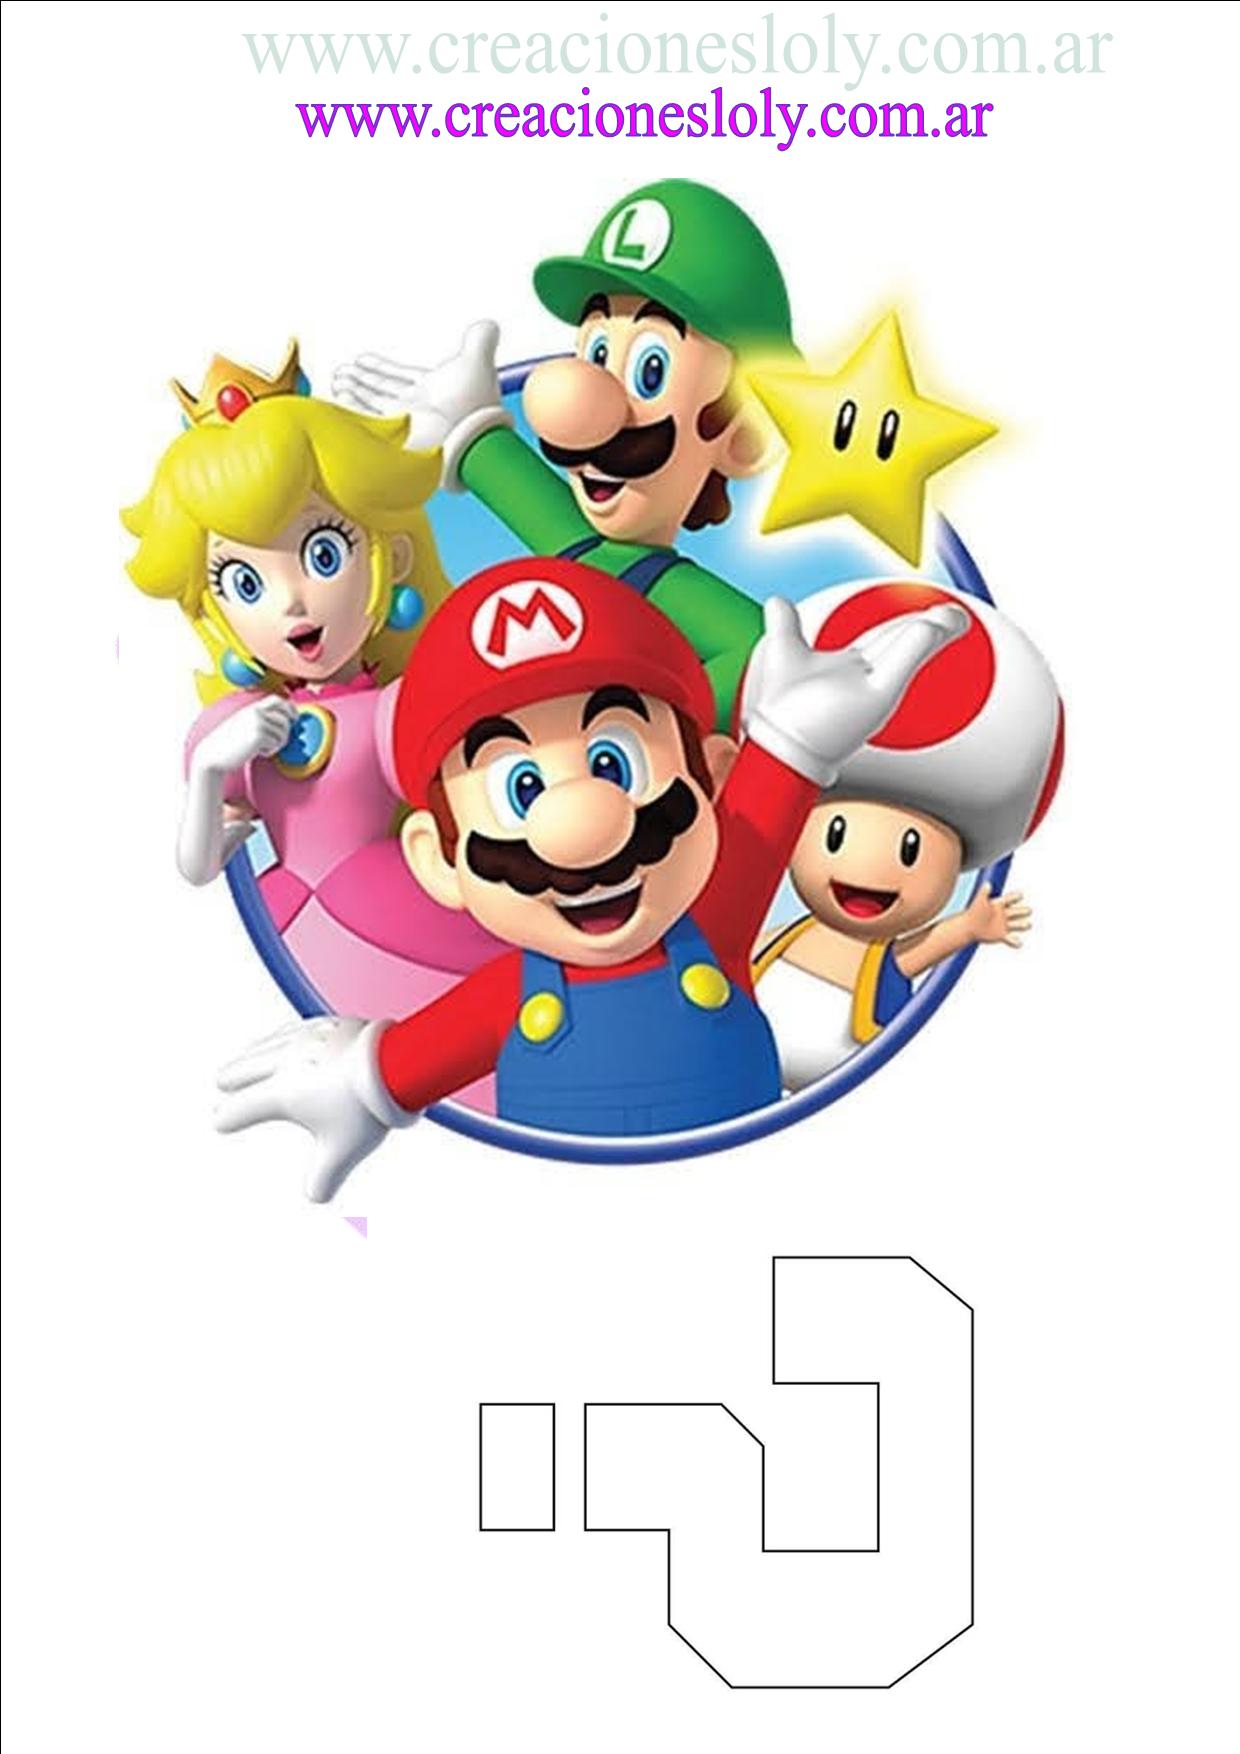 Nintendo ребенку. Марио логотип. Марио и его друзья. Супер Марио фотопечать. Nintendo Kids.